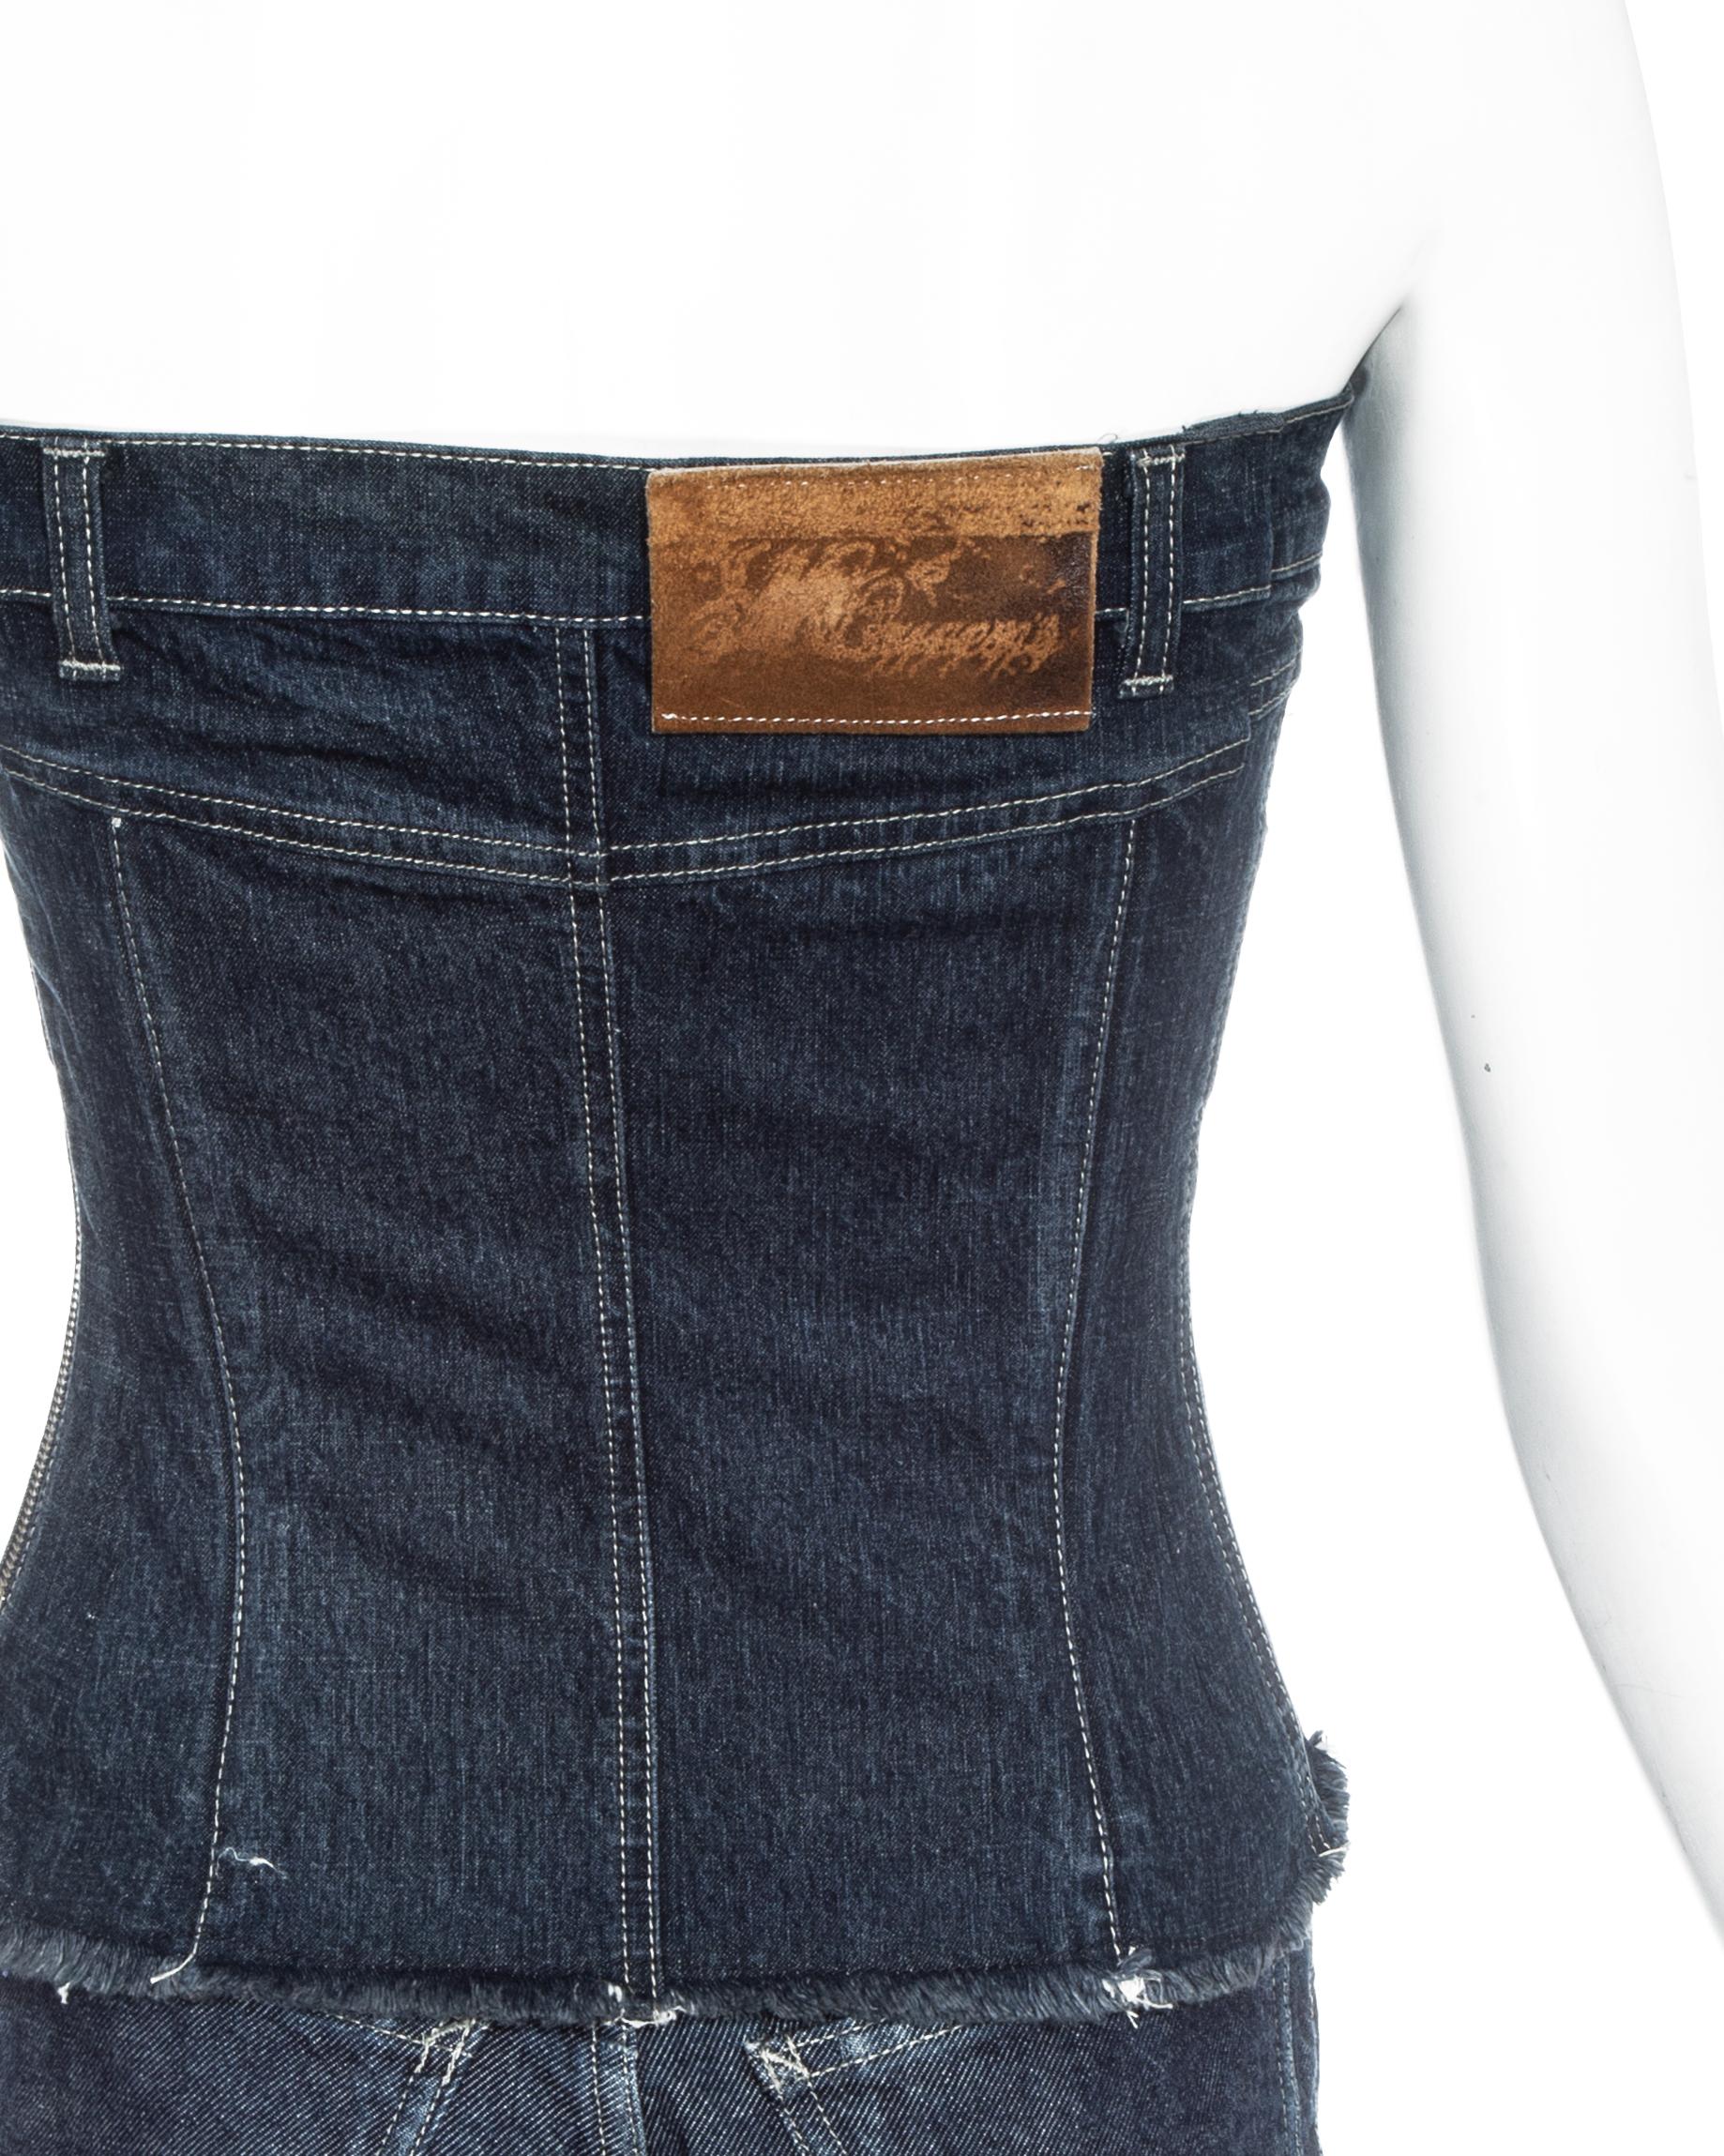 Alexander McQueen indigo denim corset and pants set, fw 1996 1